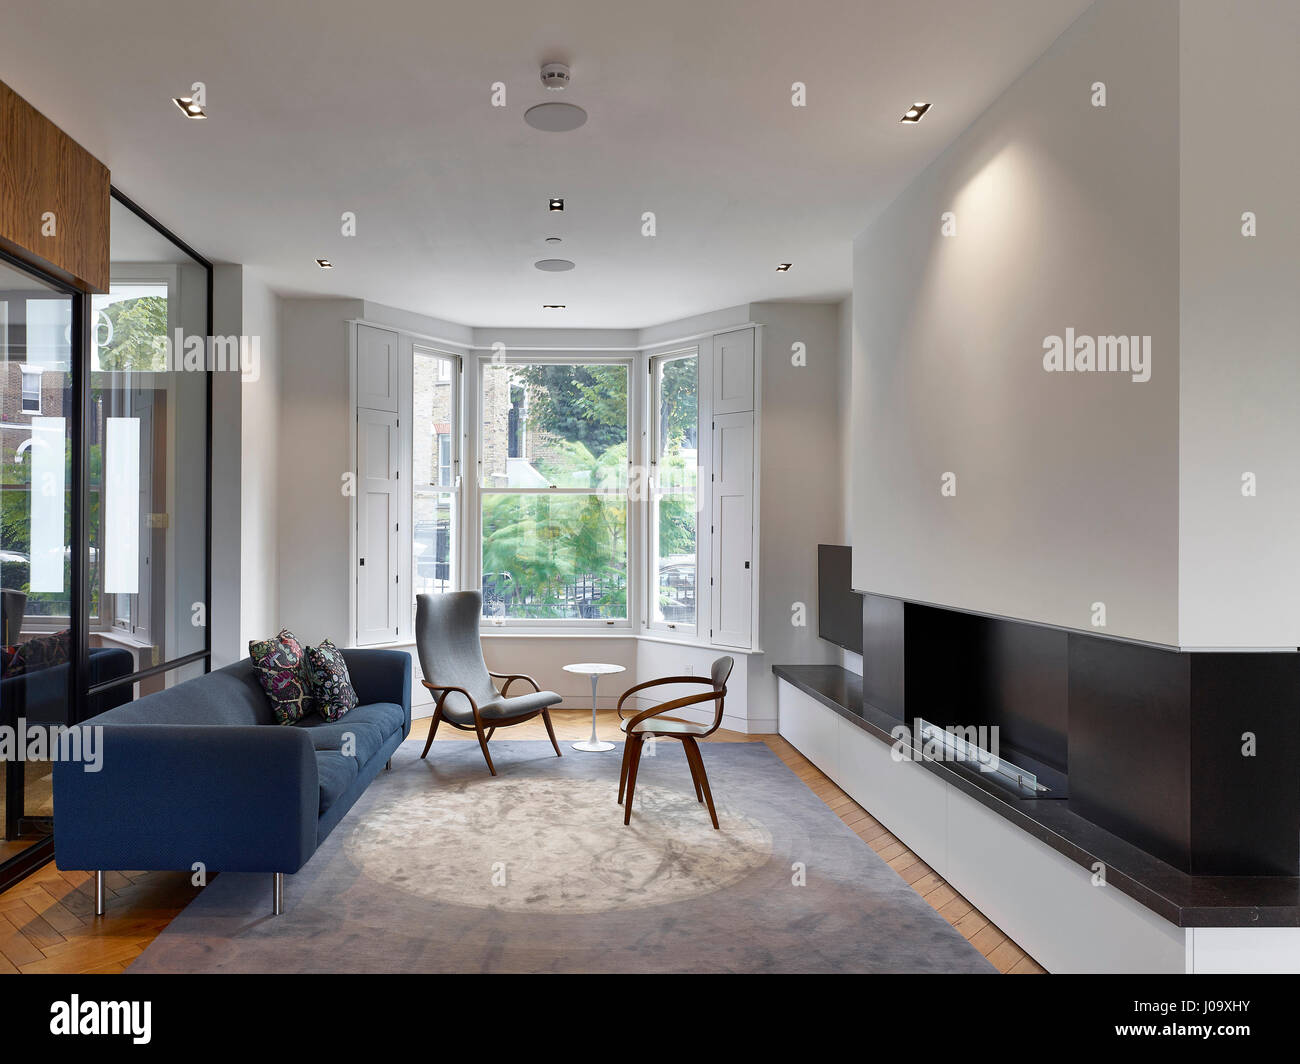 Wohnzimmer. Hampstead Teiche House, London, Vereinigtes Königreich. Architekt: Steif + Trevillion Architekten, 2016. Stockfoto